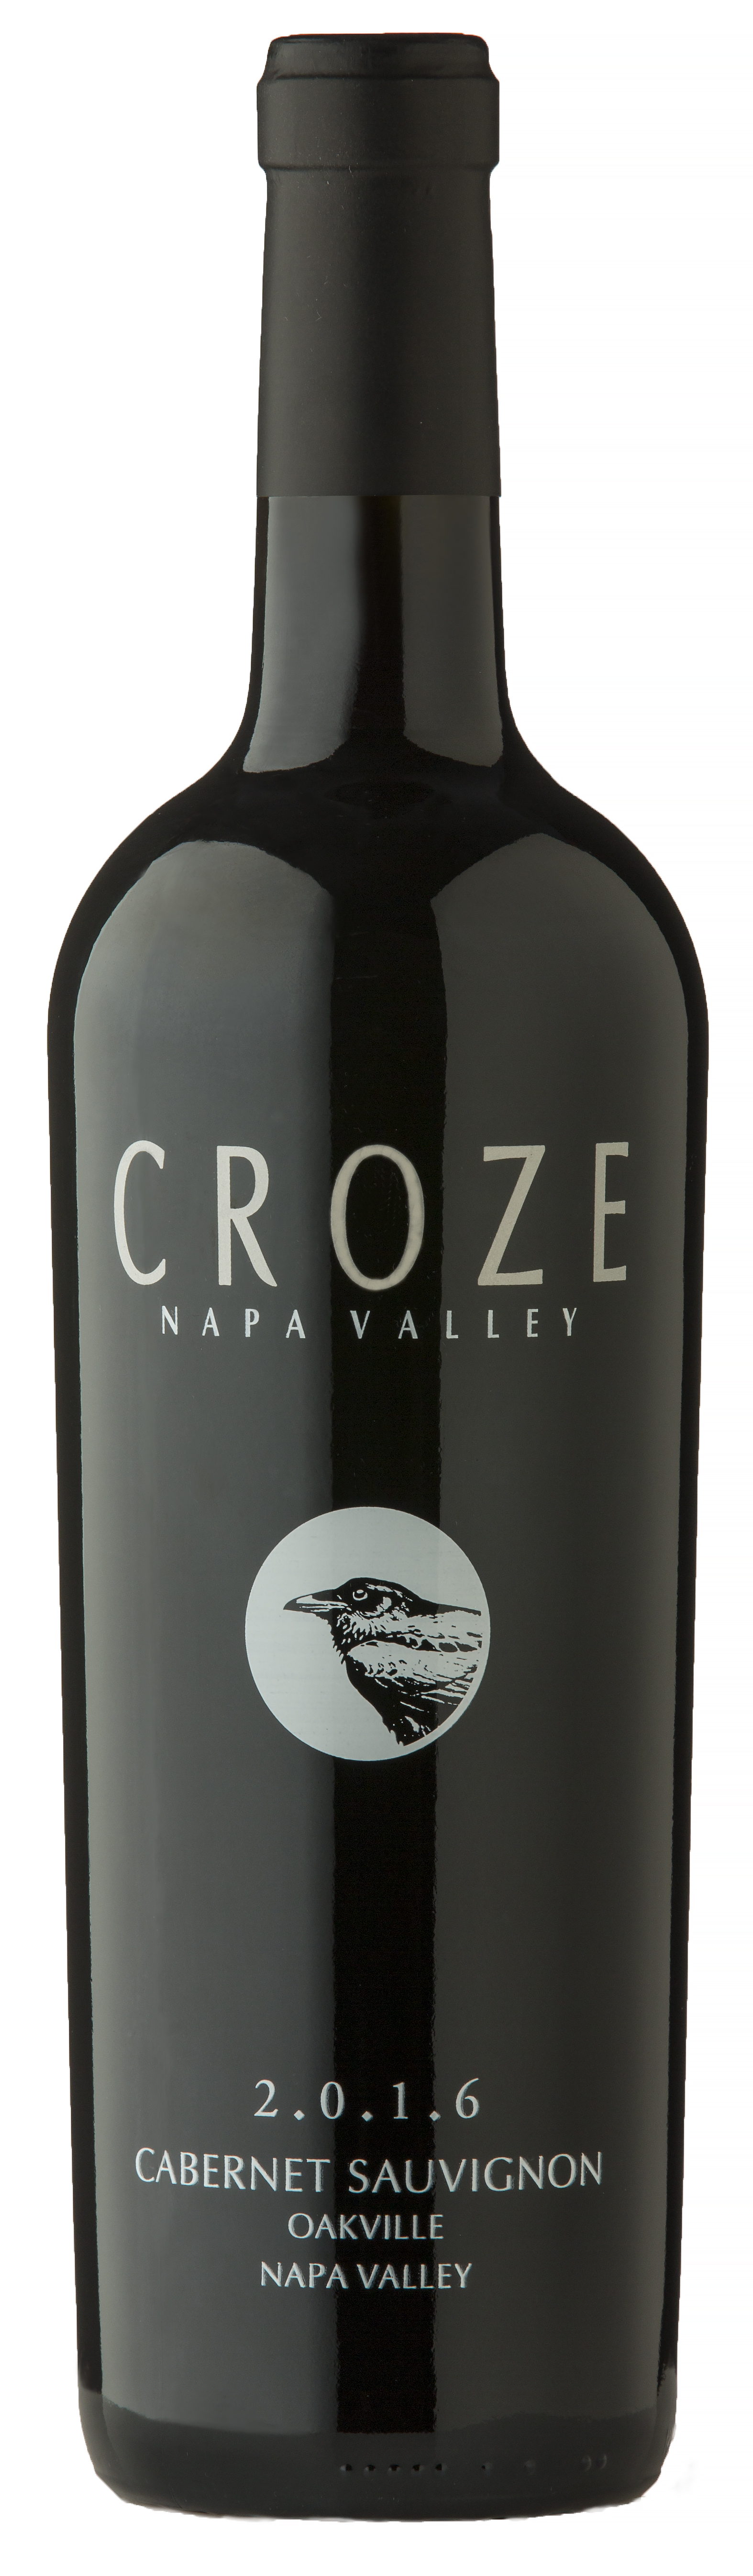 Product Image for 2016 Croze Vintners Reserve Cabernet Sauvignon, Oakville